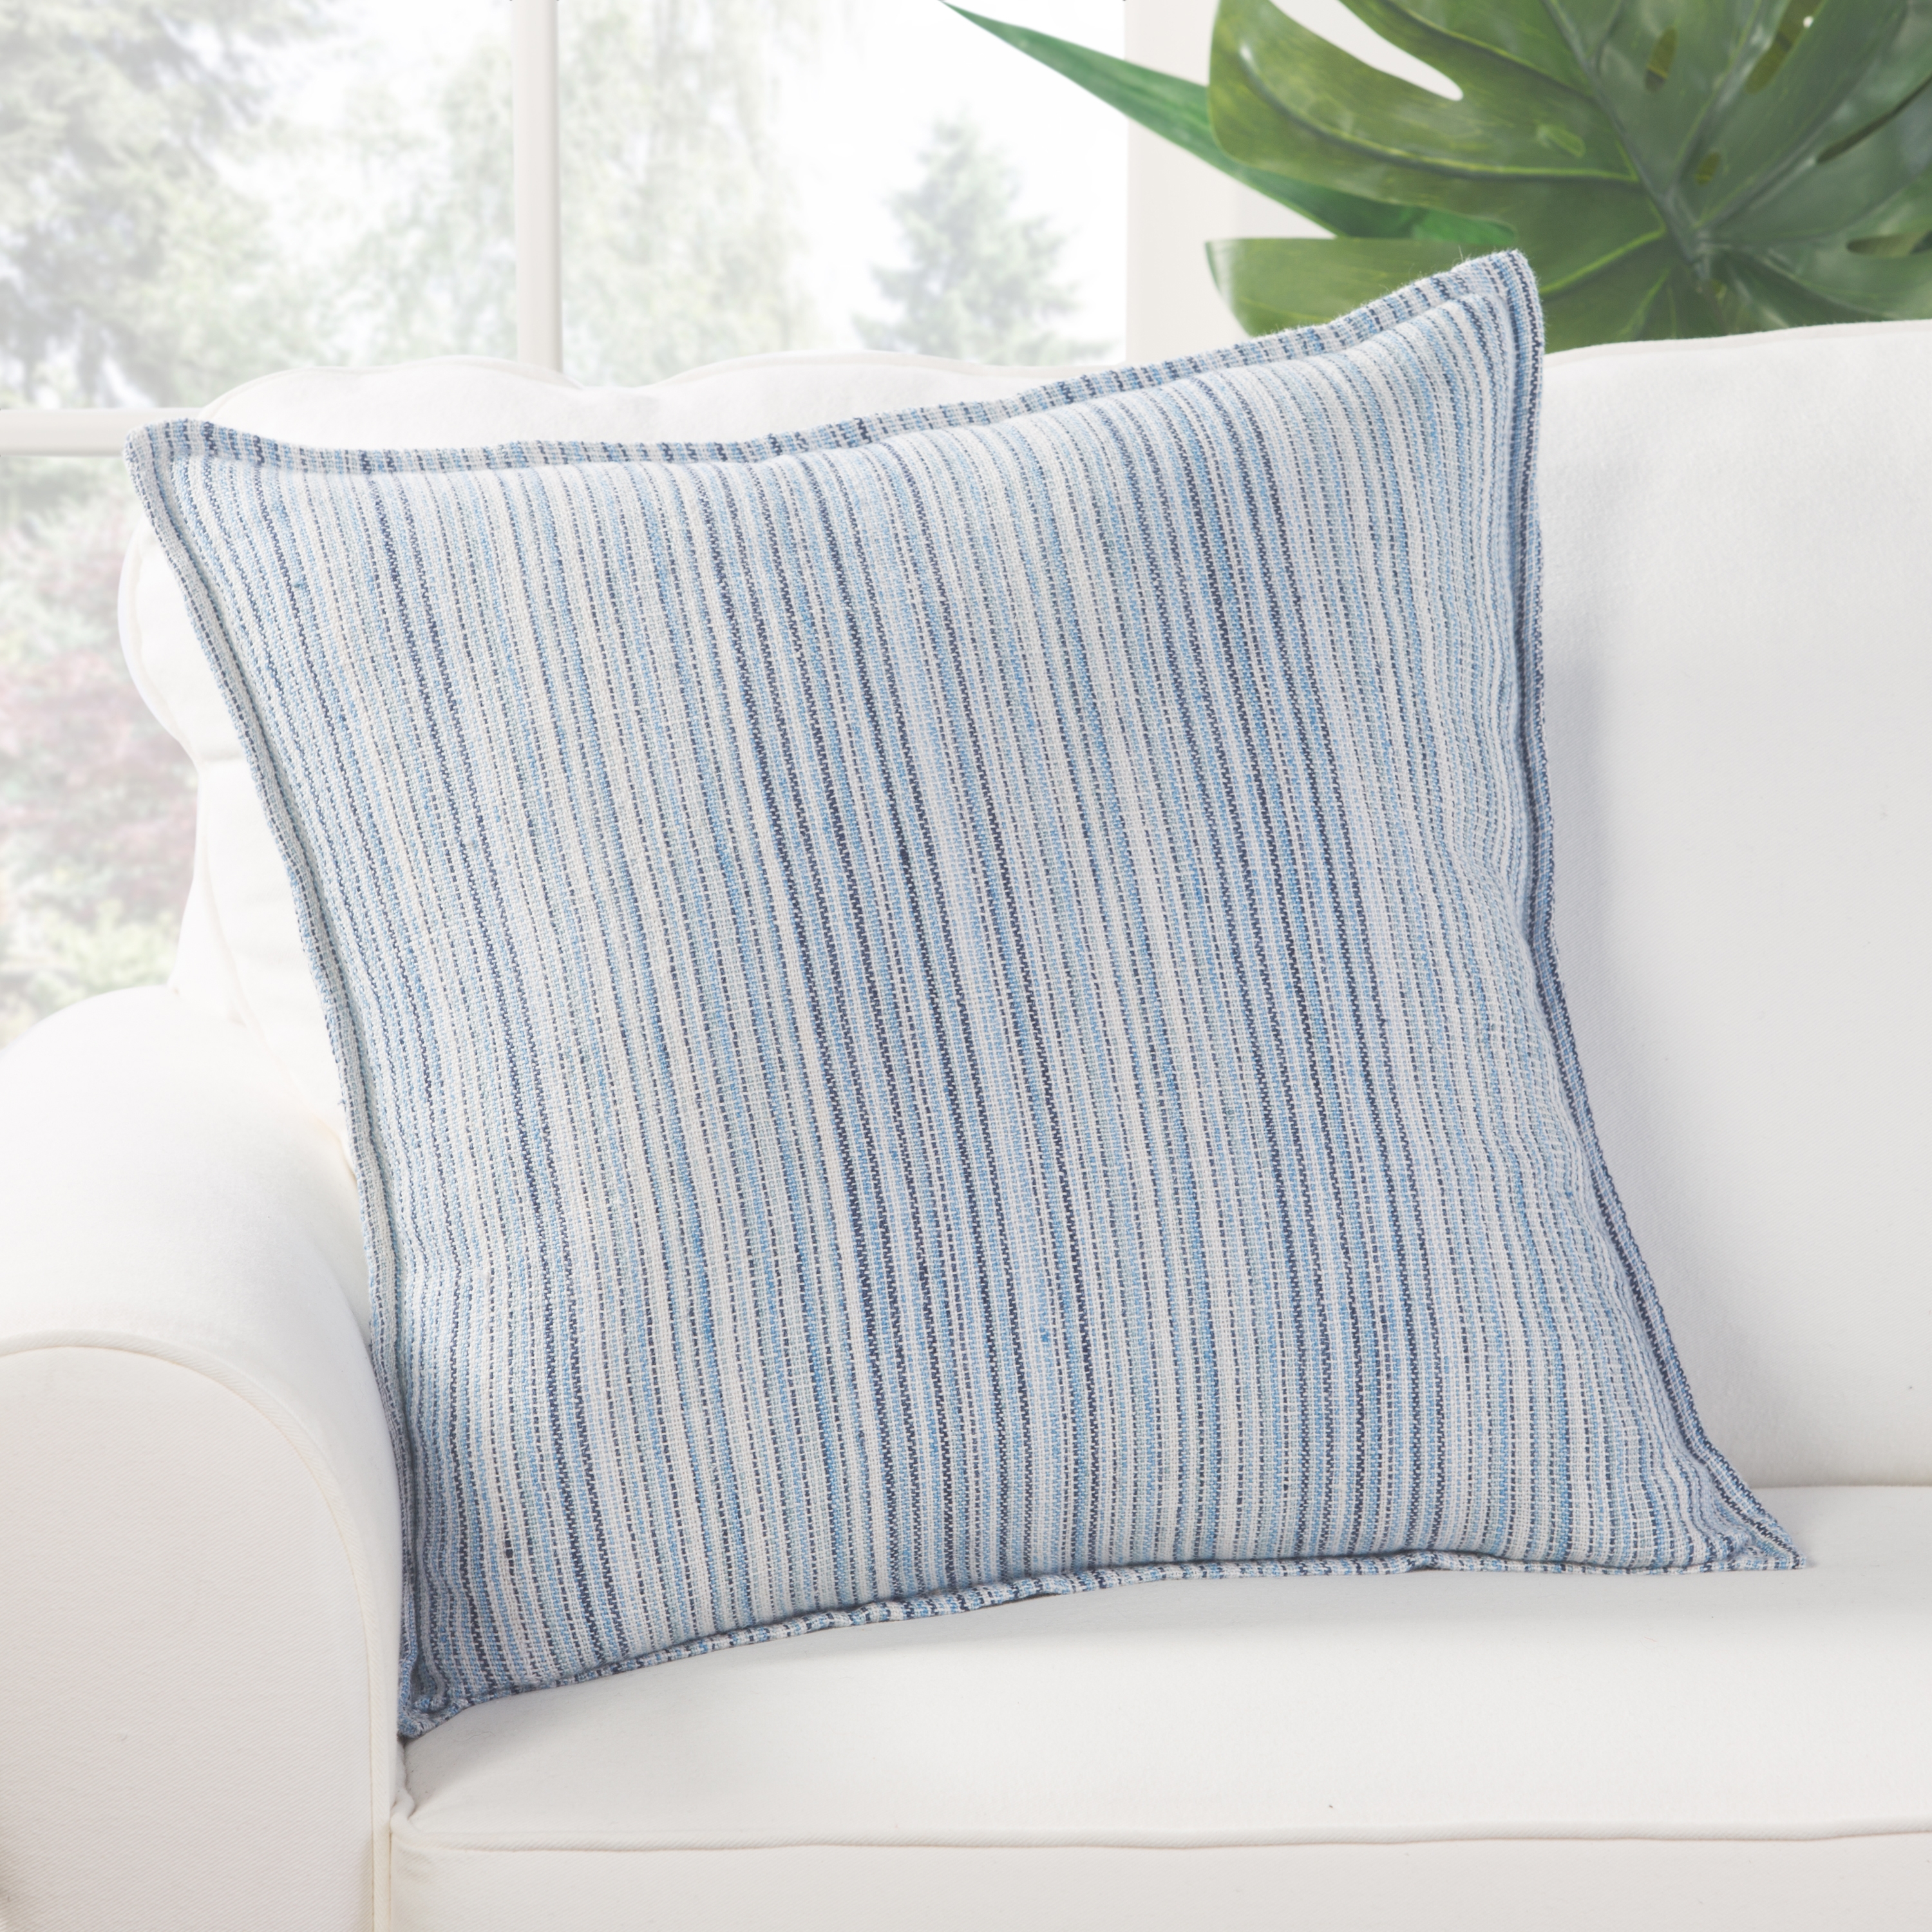 Design (US) Blue 22"X22" Pillow - Image 3